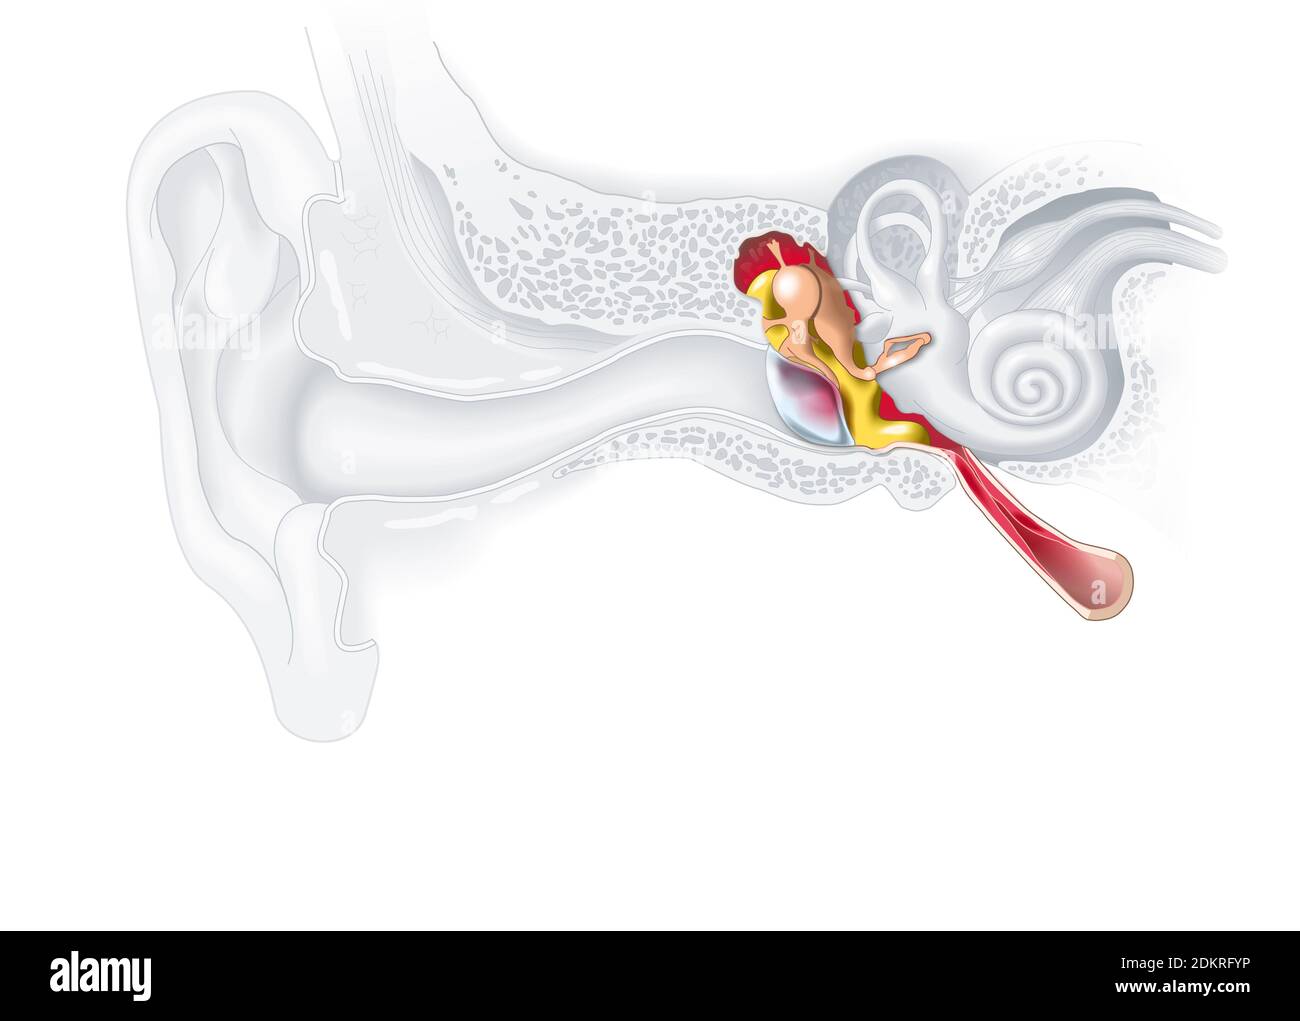 Ilustración médica que muestra inflamación del oído medio, otitis media Foto de stock